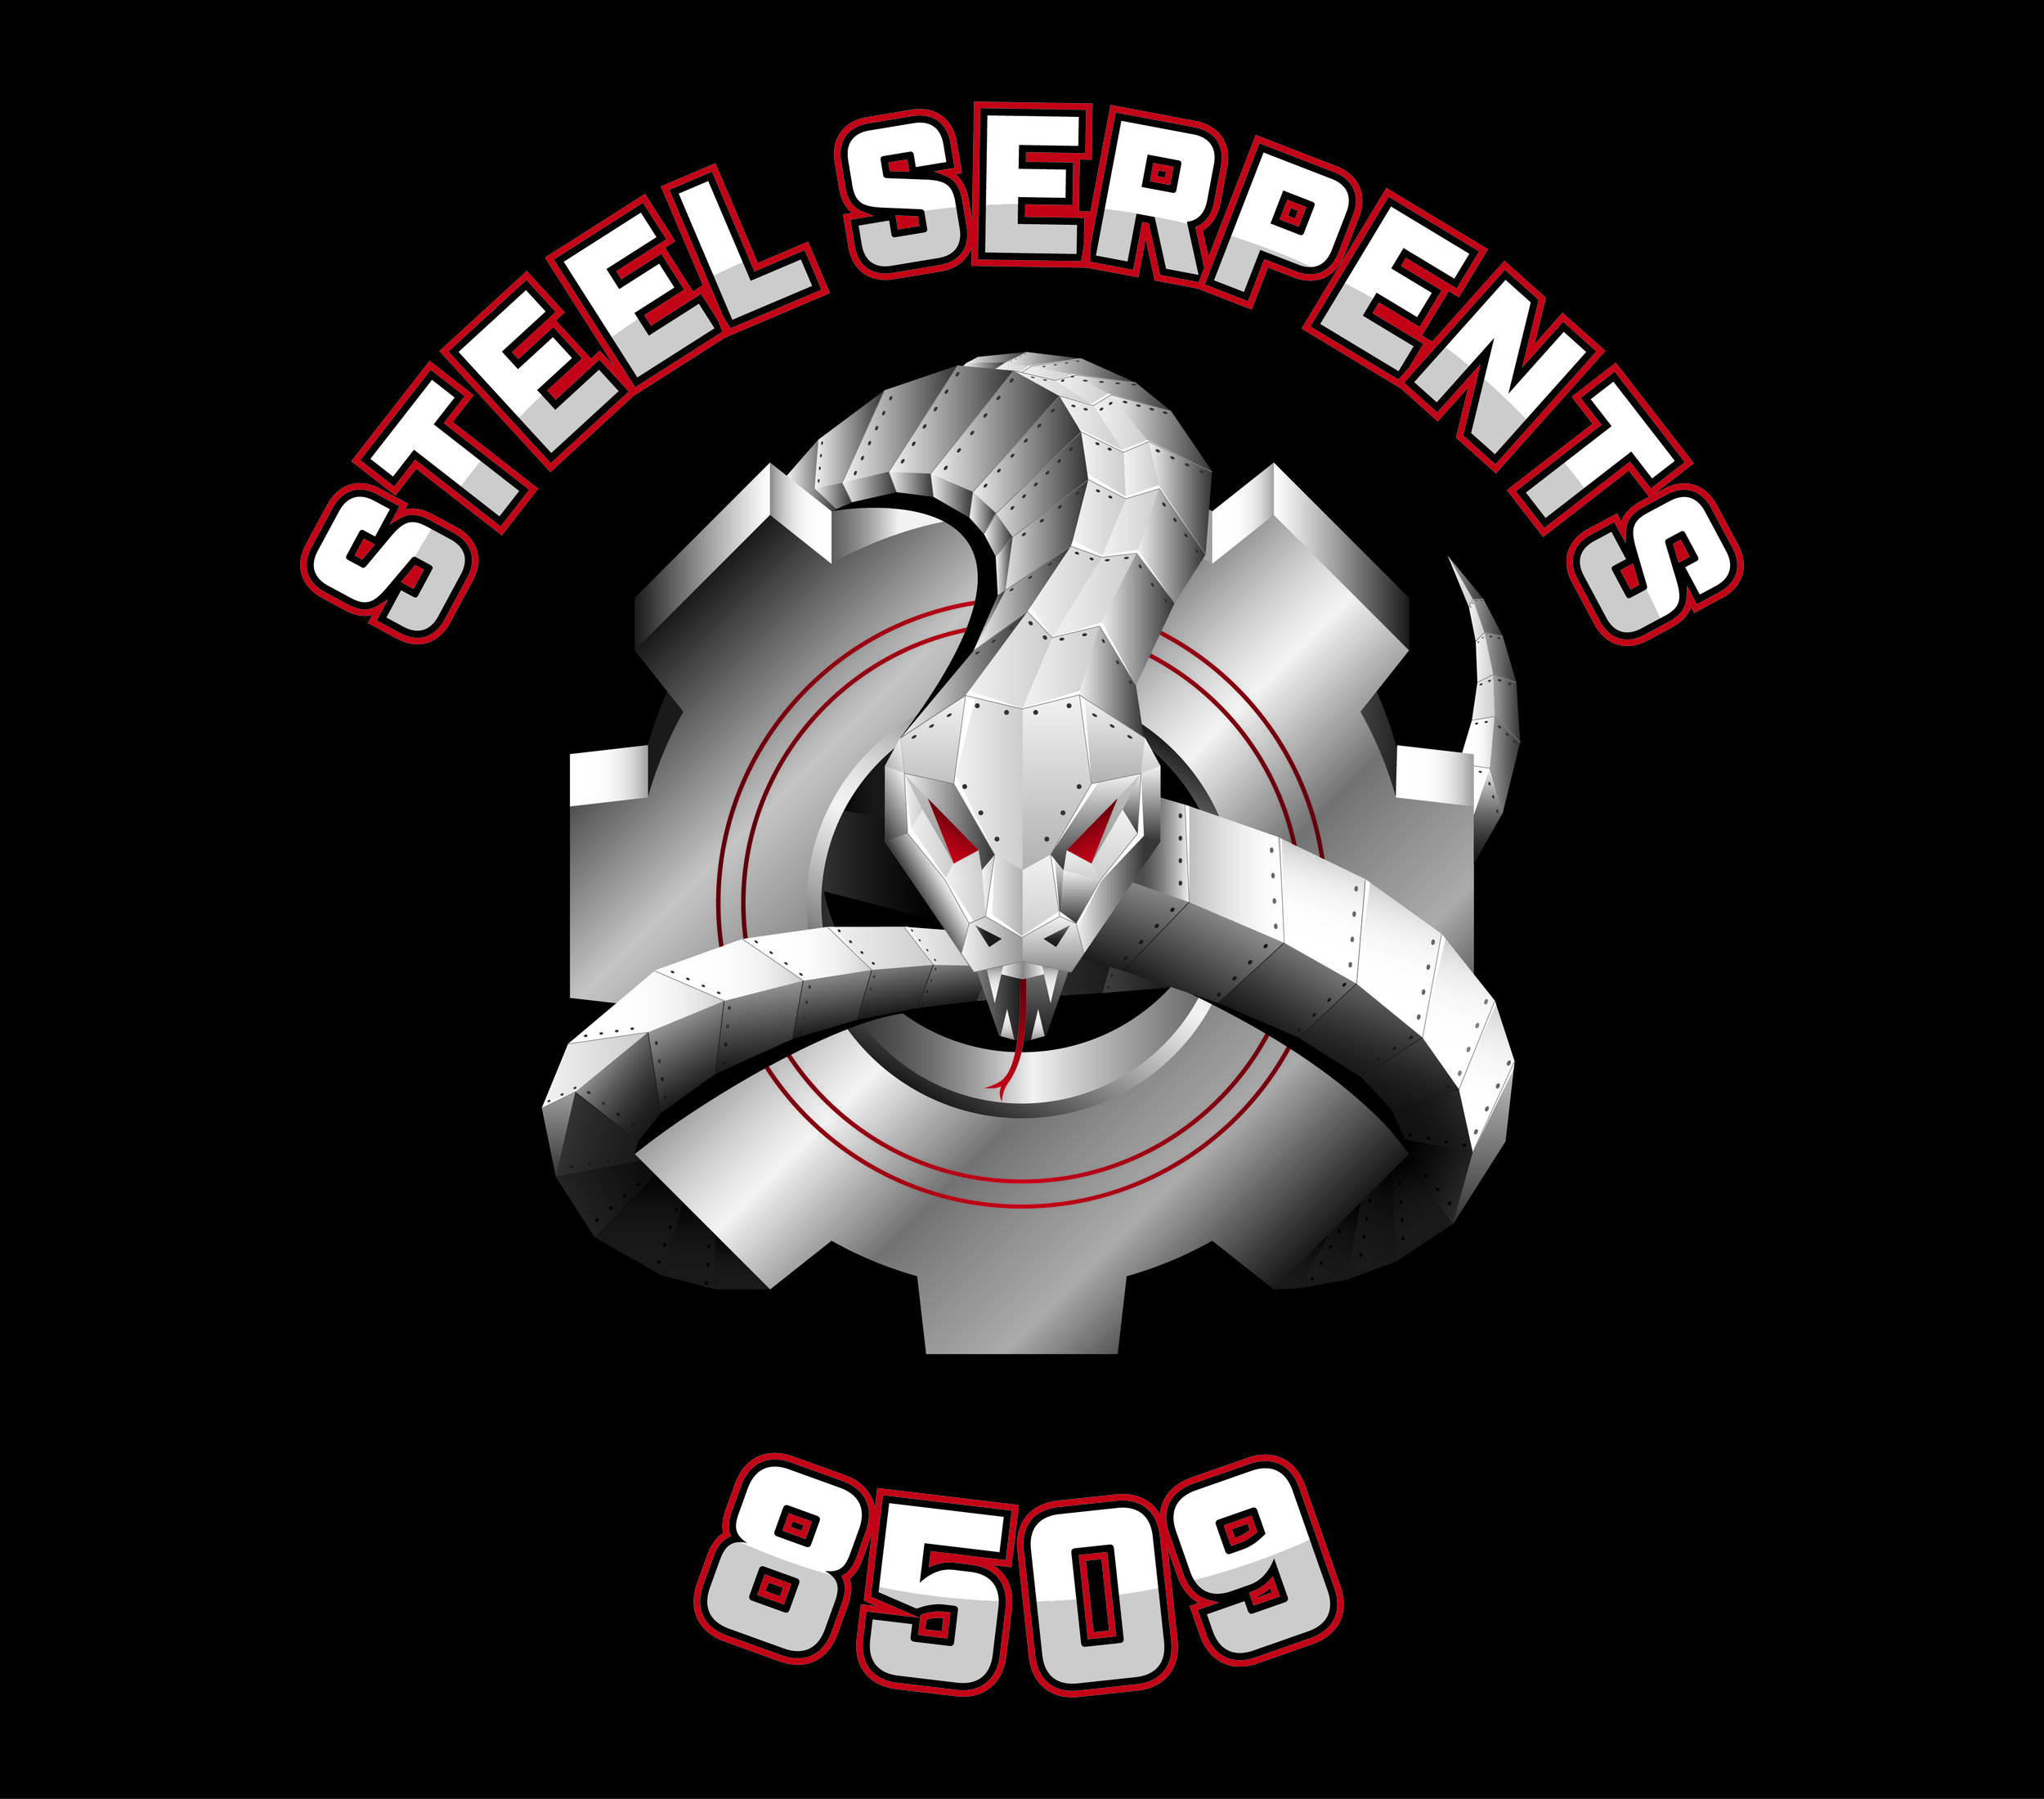 steel_serpents_8509.jpg